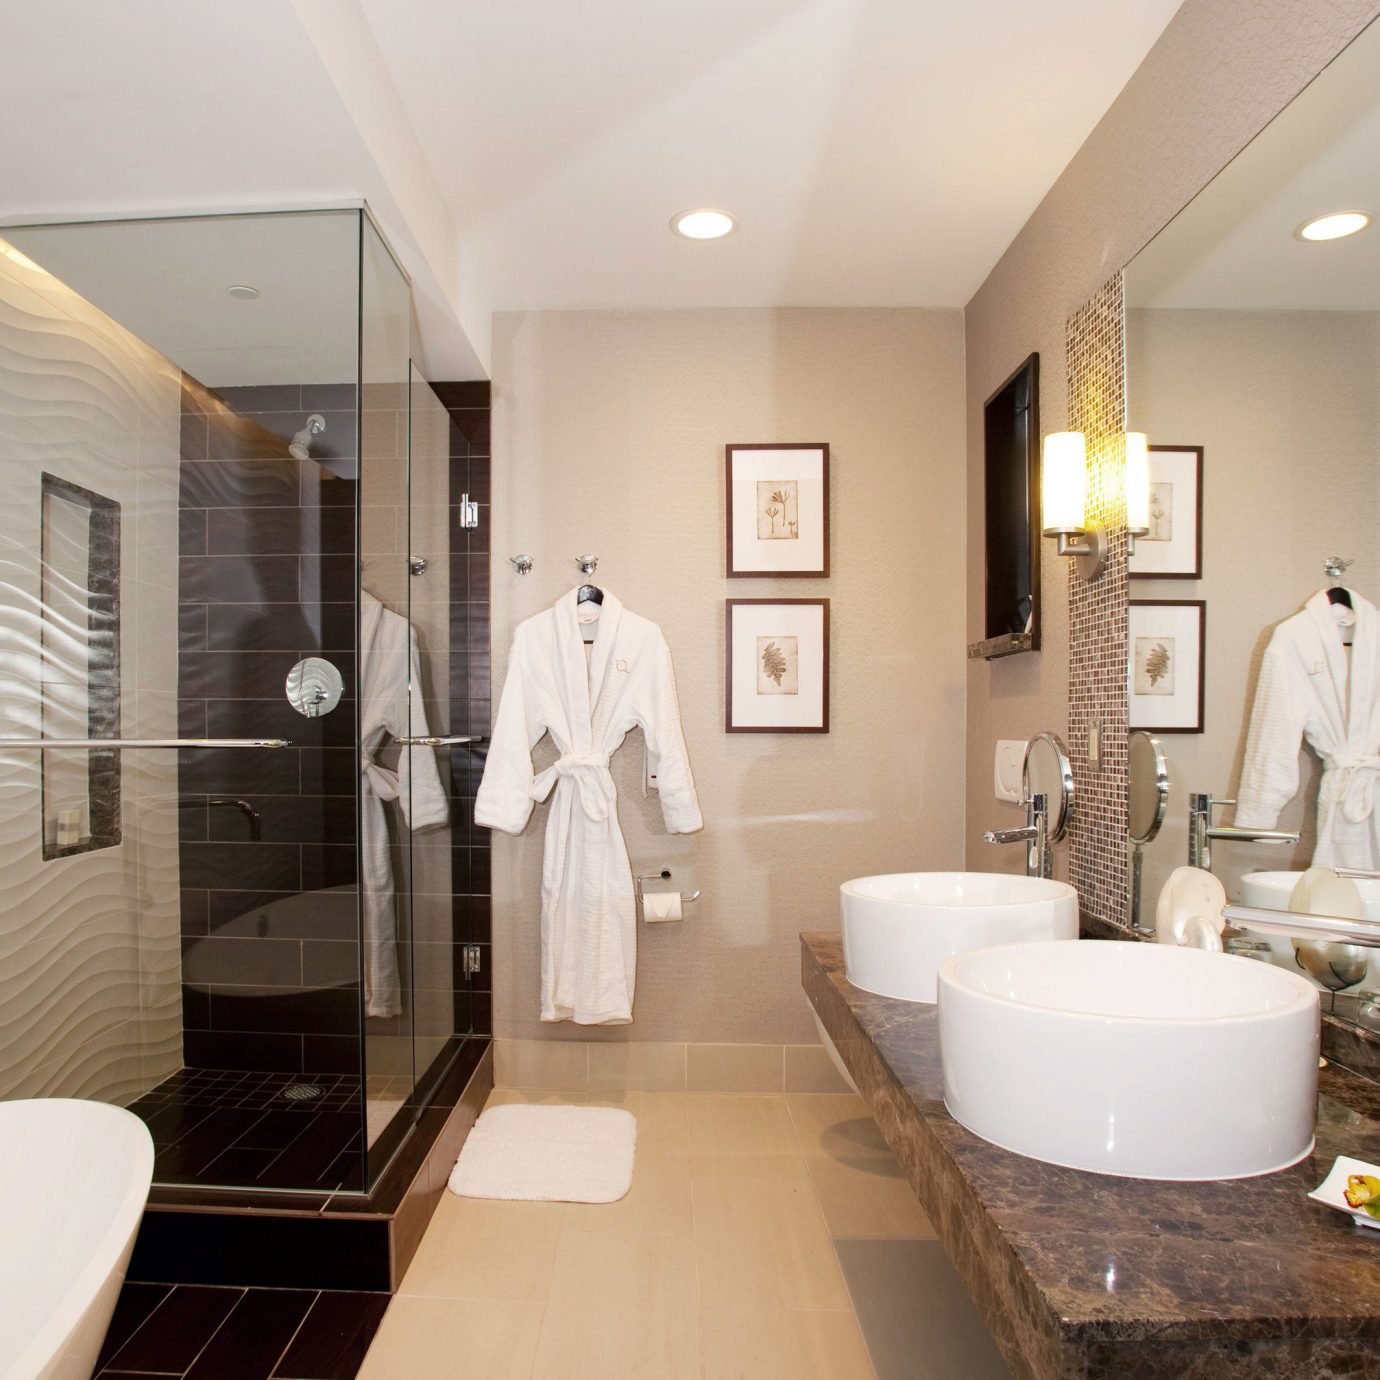 bathroom mirror sink property home Suite vanity Bath tub Modern clean bathtub rack